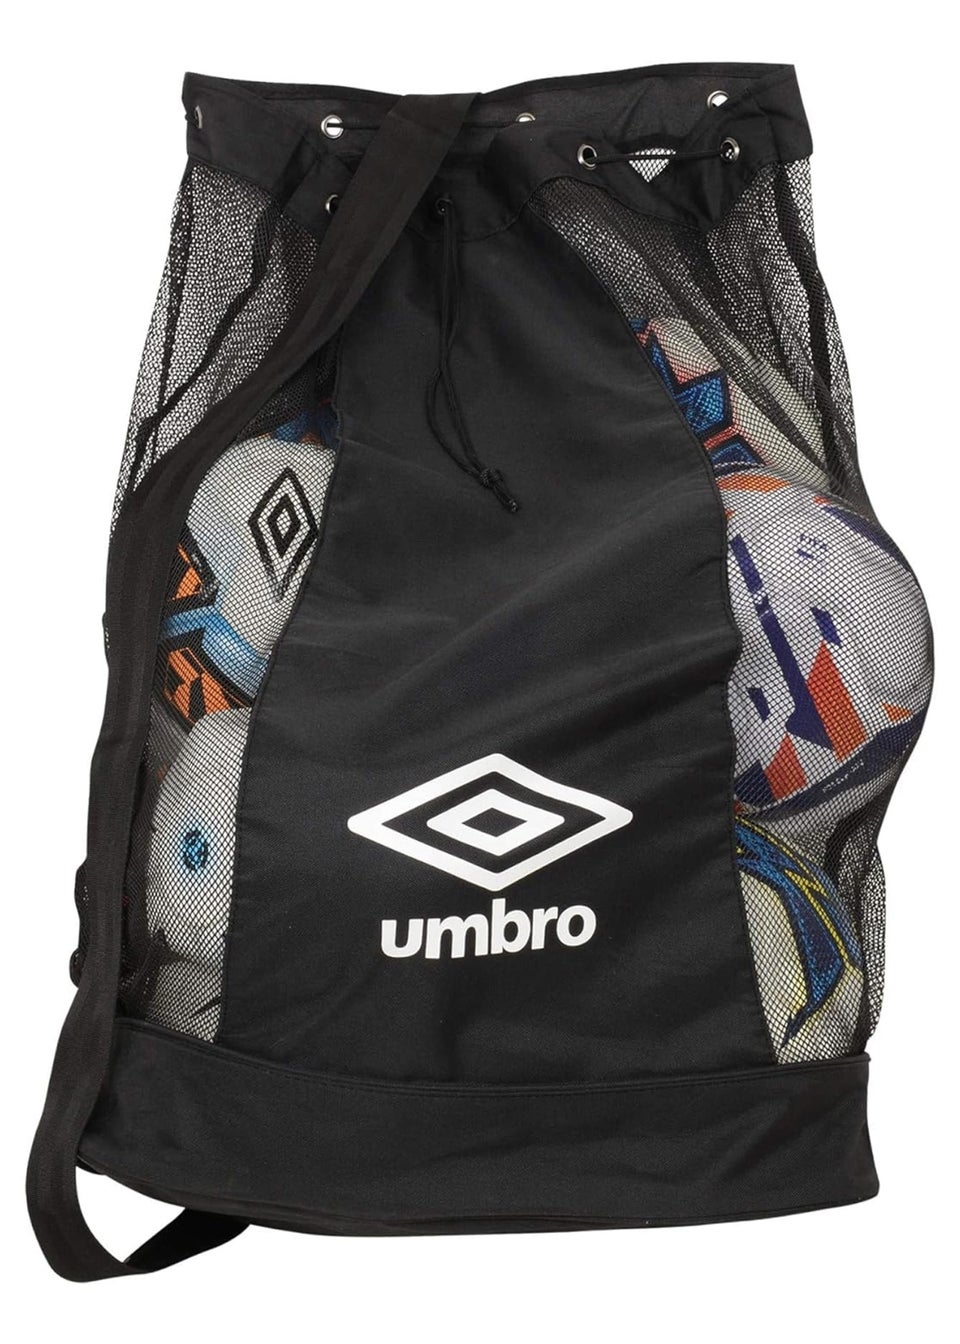 Umbro Black/White Logo Football Bag